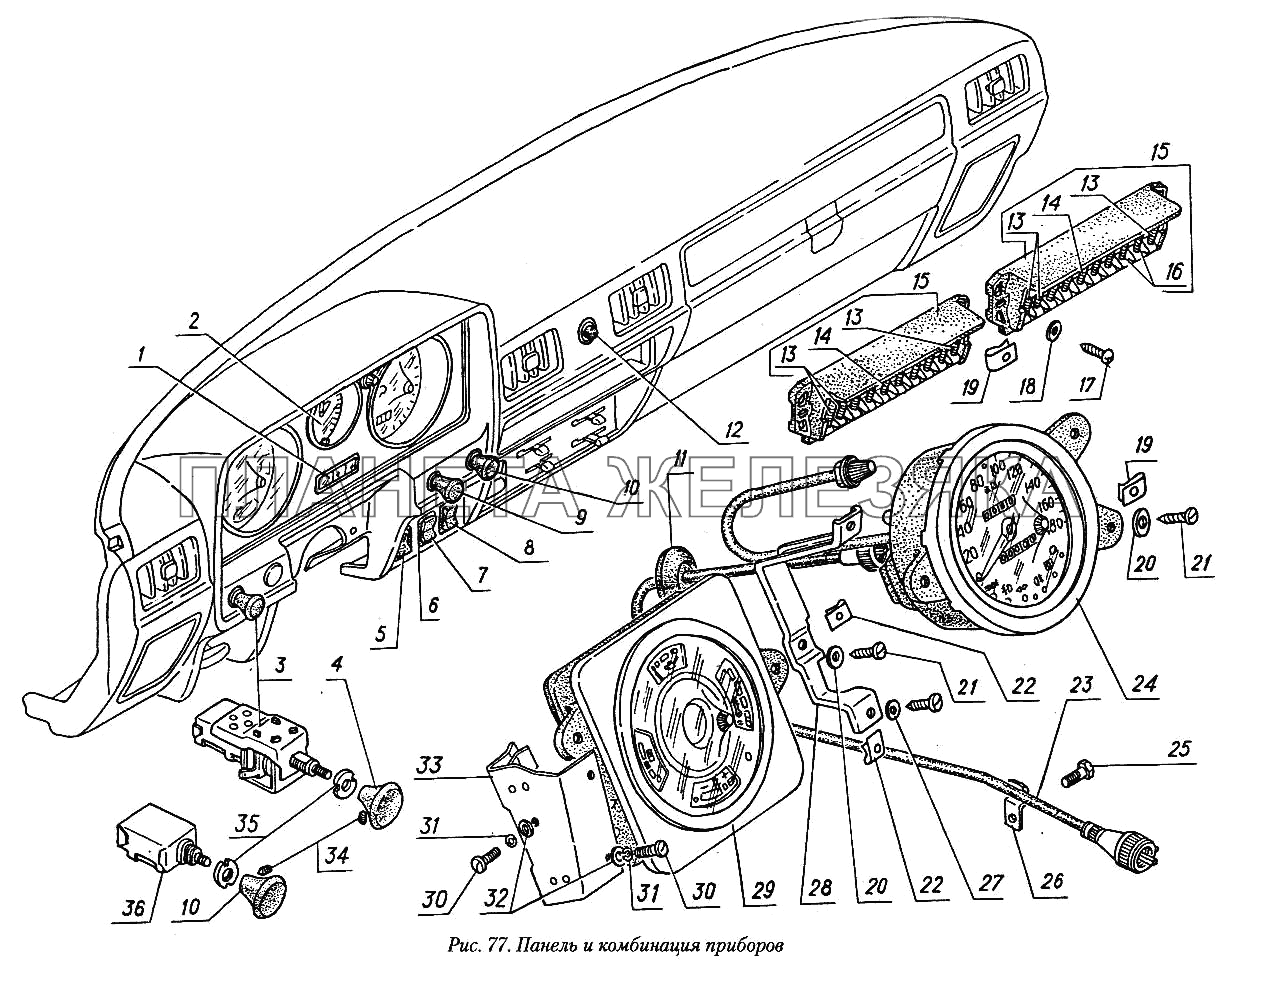 Панель и комбинация приборов ГАЗ-31029